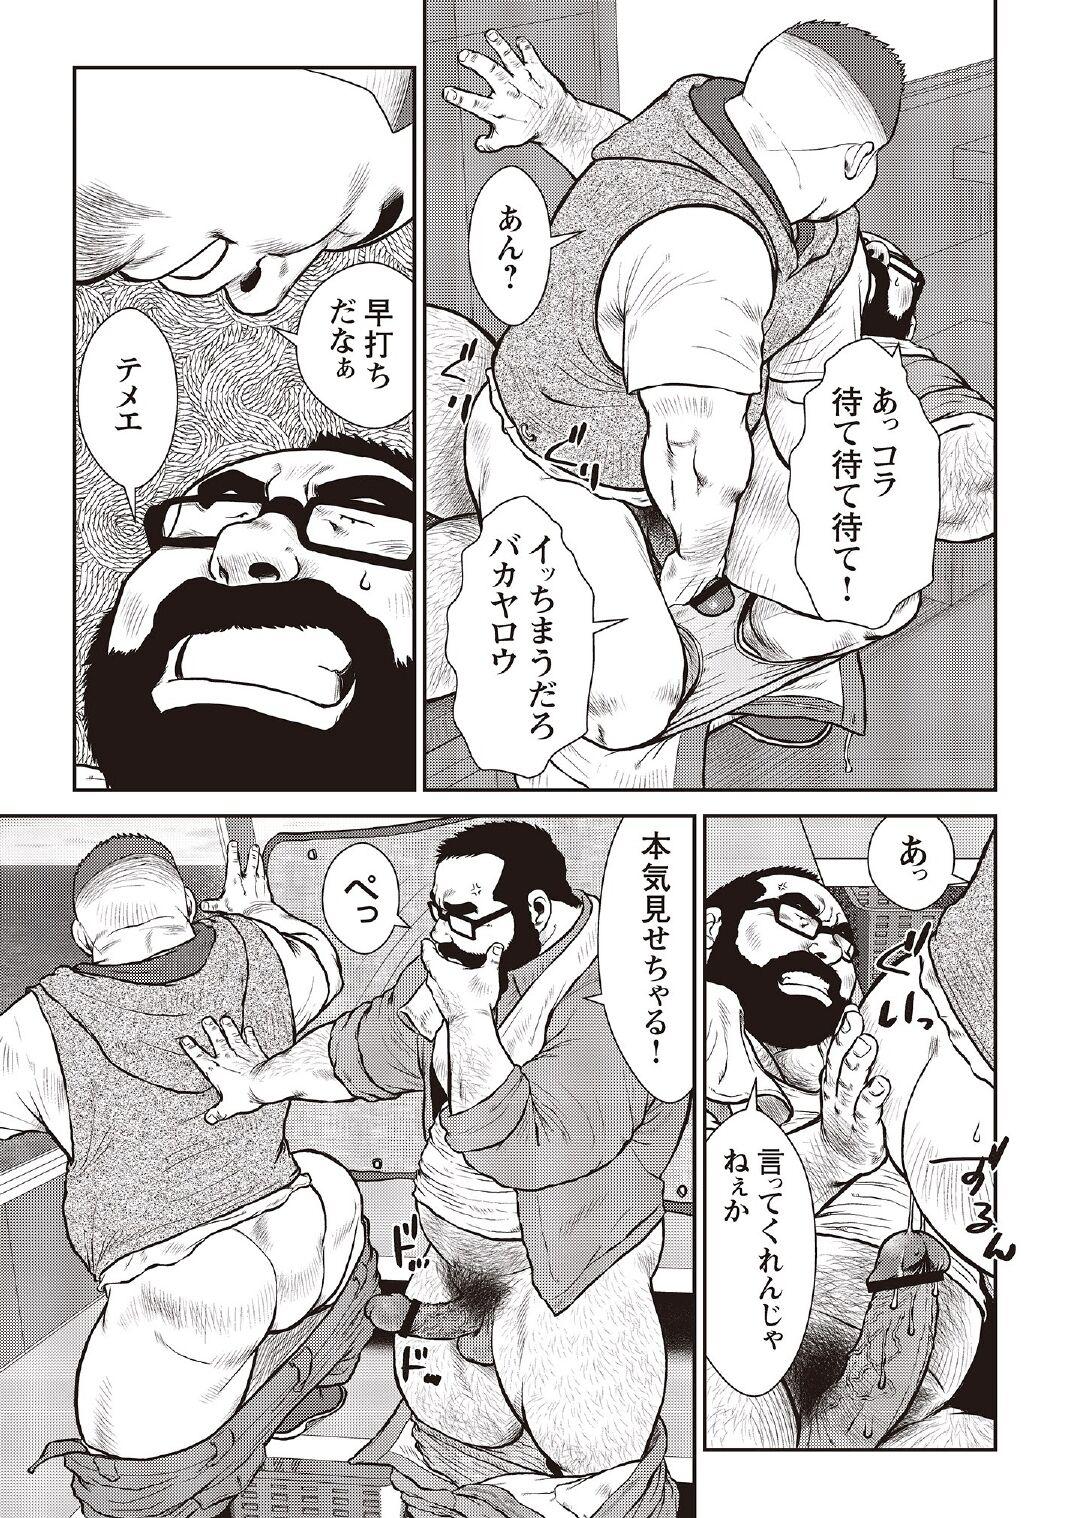 [Ebisubashi Seizou] Ebisubashi Seizou Tanpen Manga Shuu 2 Fuuun! Danshi Ryou [Bunsatsuban] PART 3 Bousou Hantou Taifuu Zensen Ch. 3 ~ Ch. 5 [Digital] 6